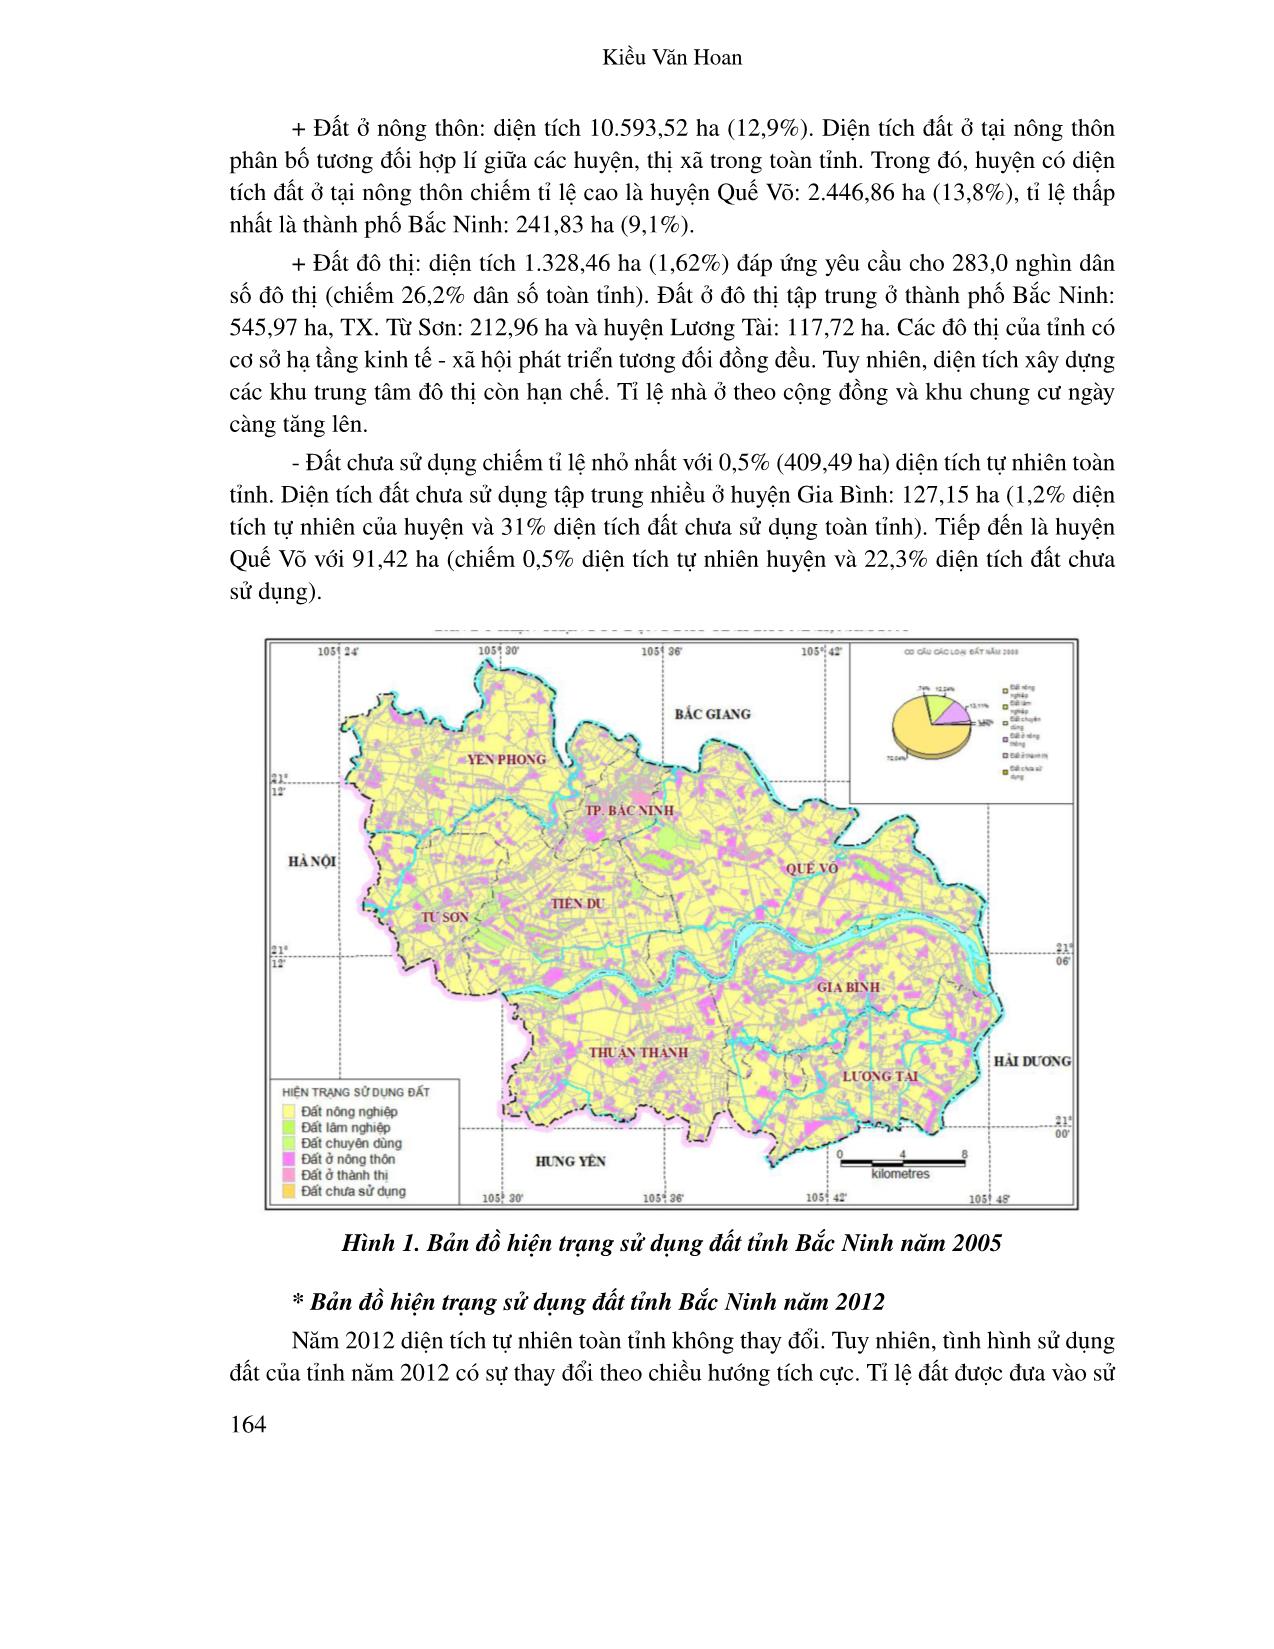 Ứng dụng hệ thống thông tin Địa lí đánh giá biến động sử dụng đất tỉnh Bắc Ninh thời kỳ 2005 - 2012 trang 4